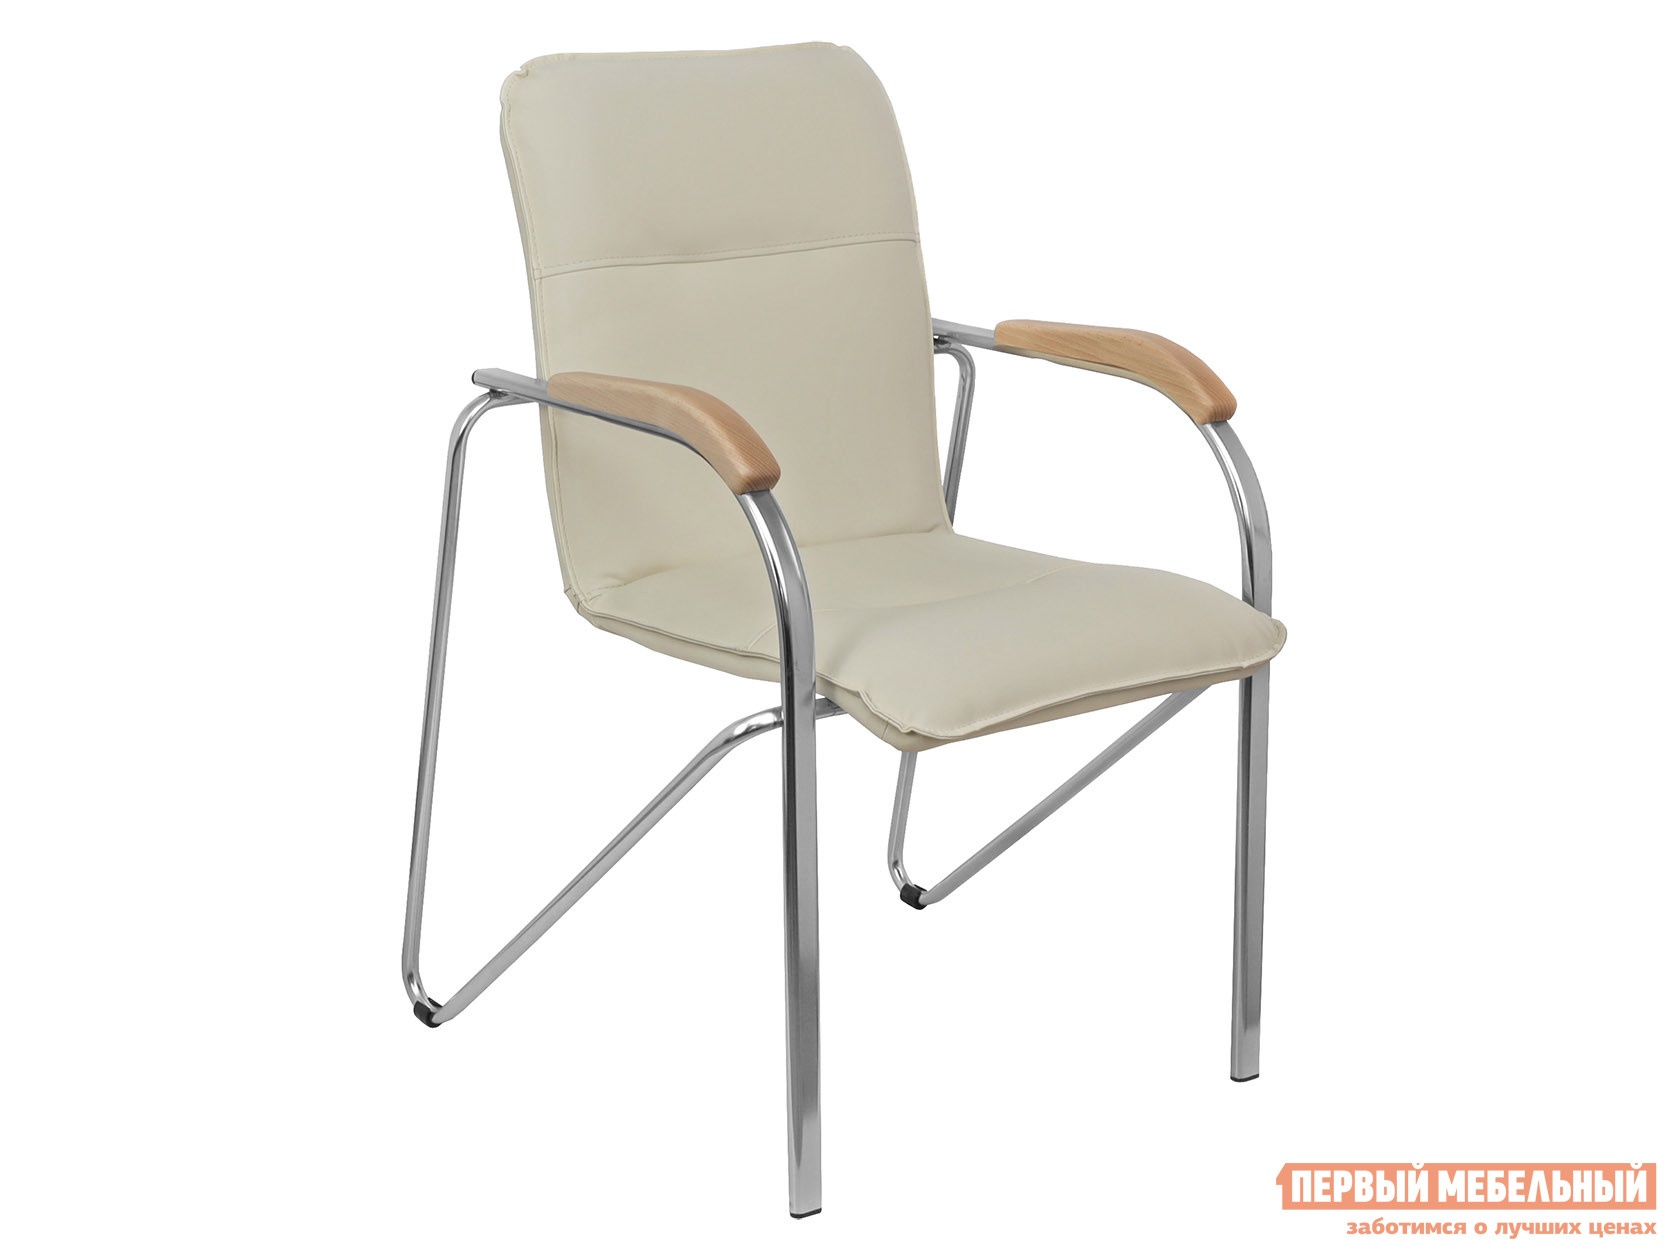 Офисный стул samba aks-1 кремовый, экокожа, деревянные preview 1